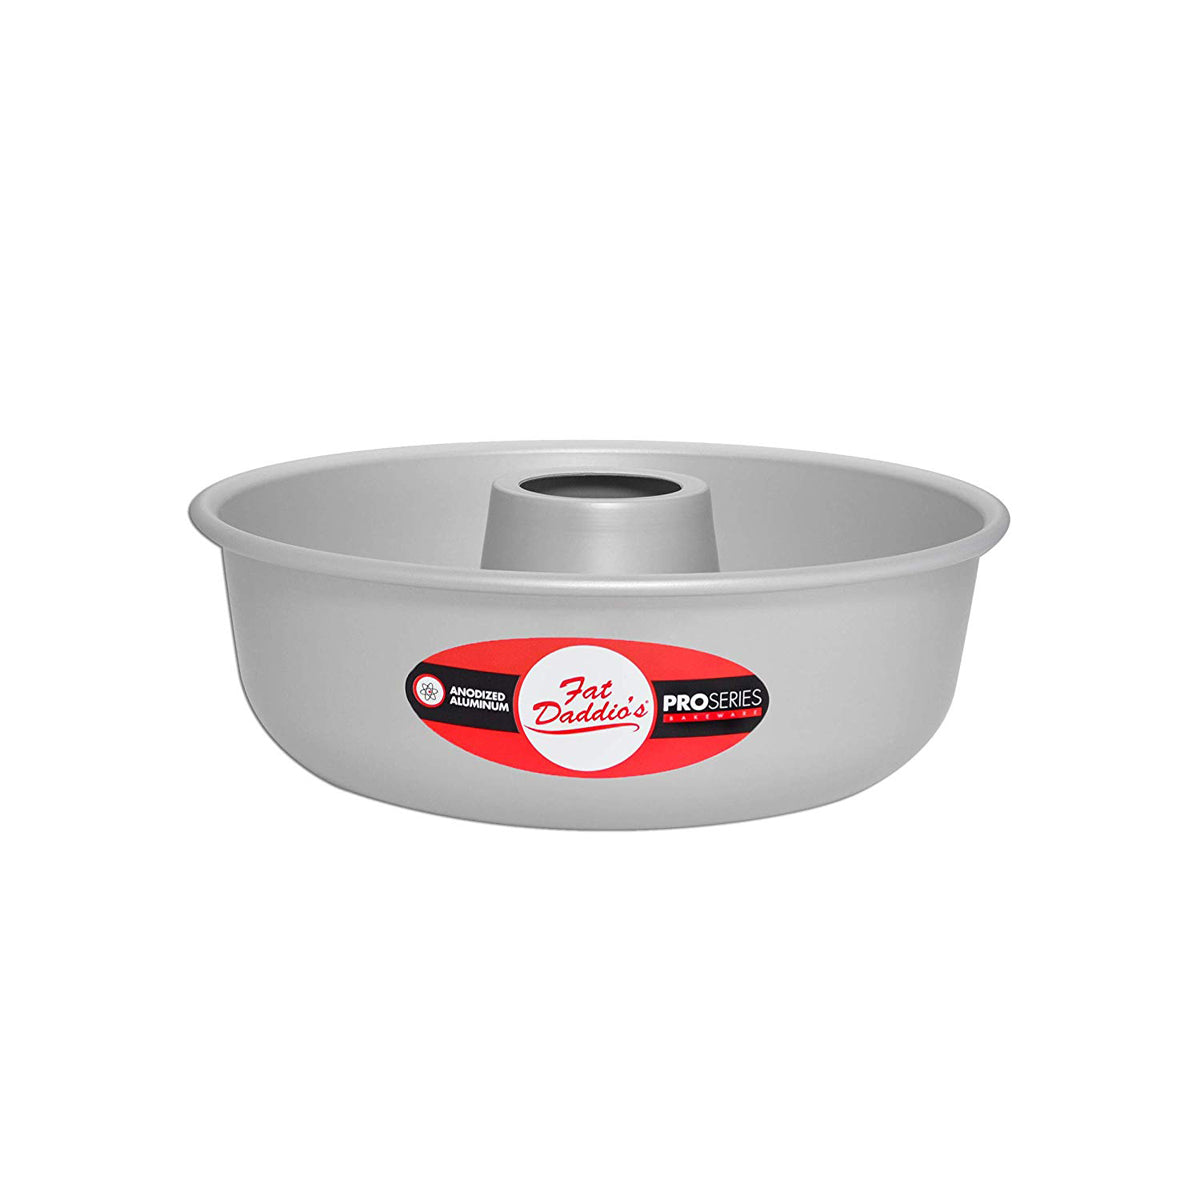 Jumbo Muffin Pan, 18 x 13, 12 Cups, Aluminum, Focus Foodservice 903515